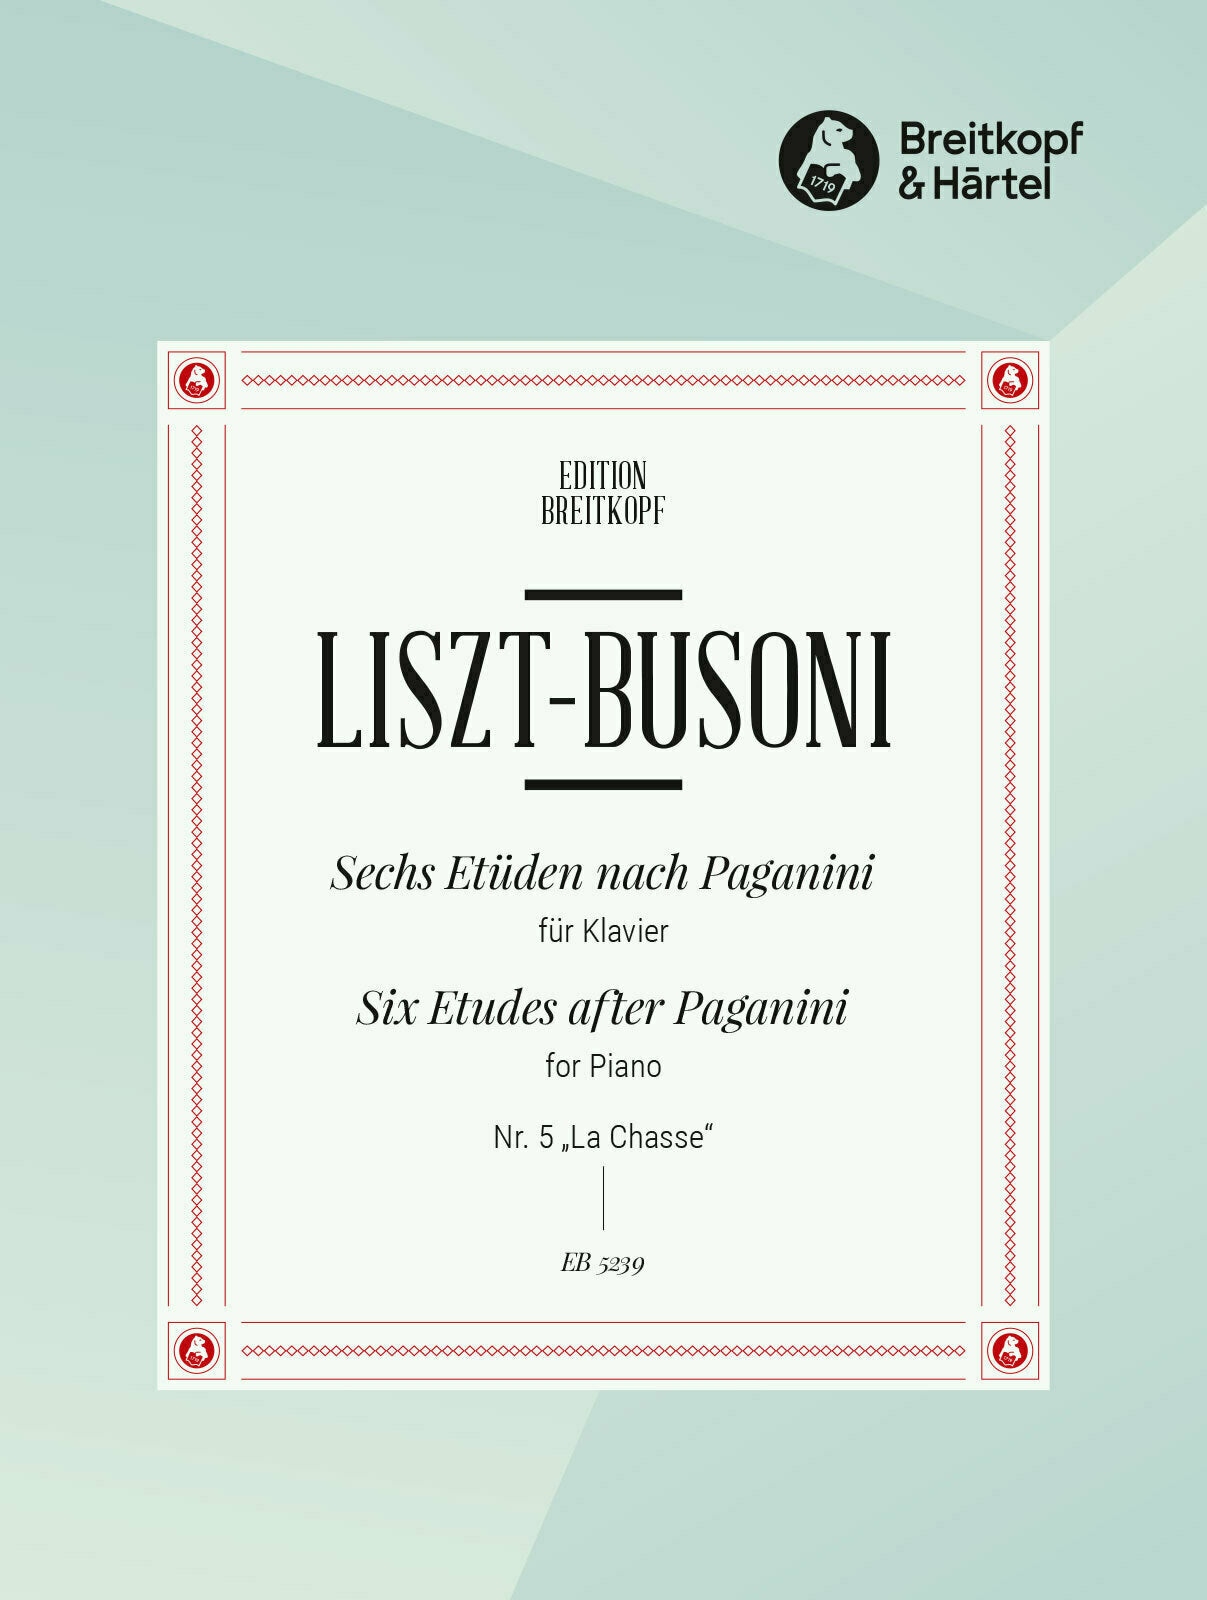 Liszt-Busoni: Etude No. 5 after Paganini - "La Chasse"